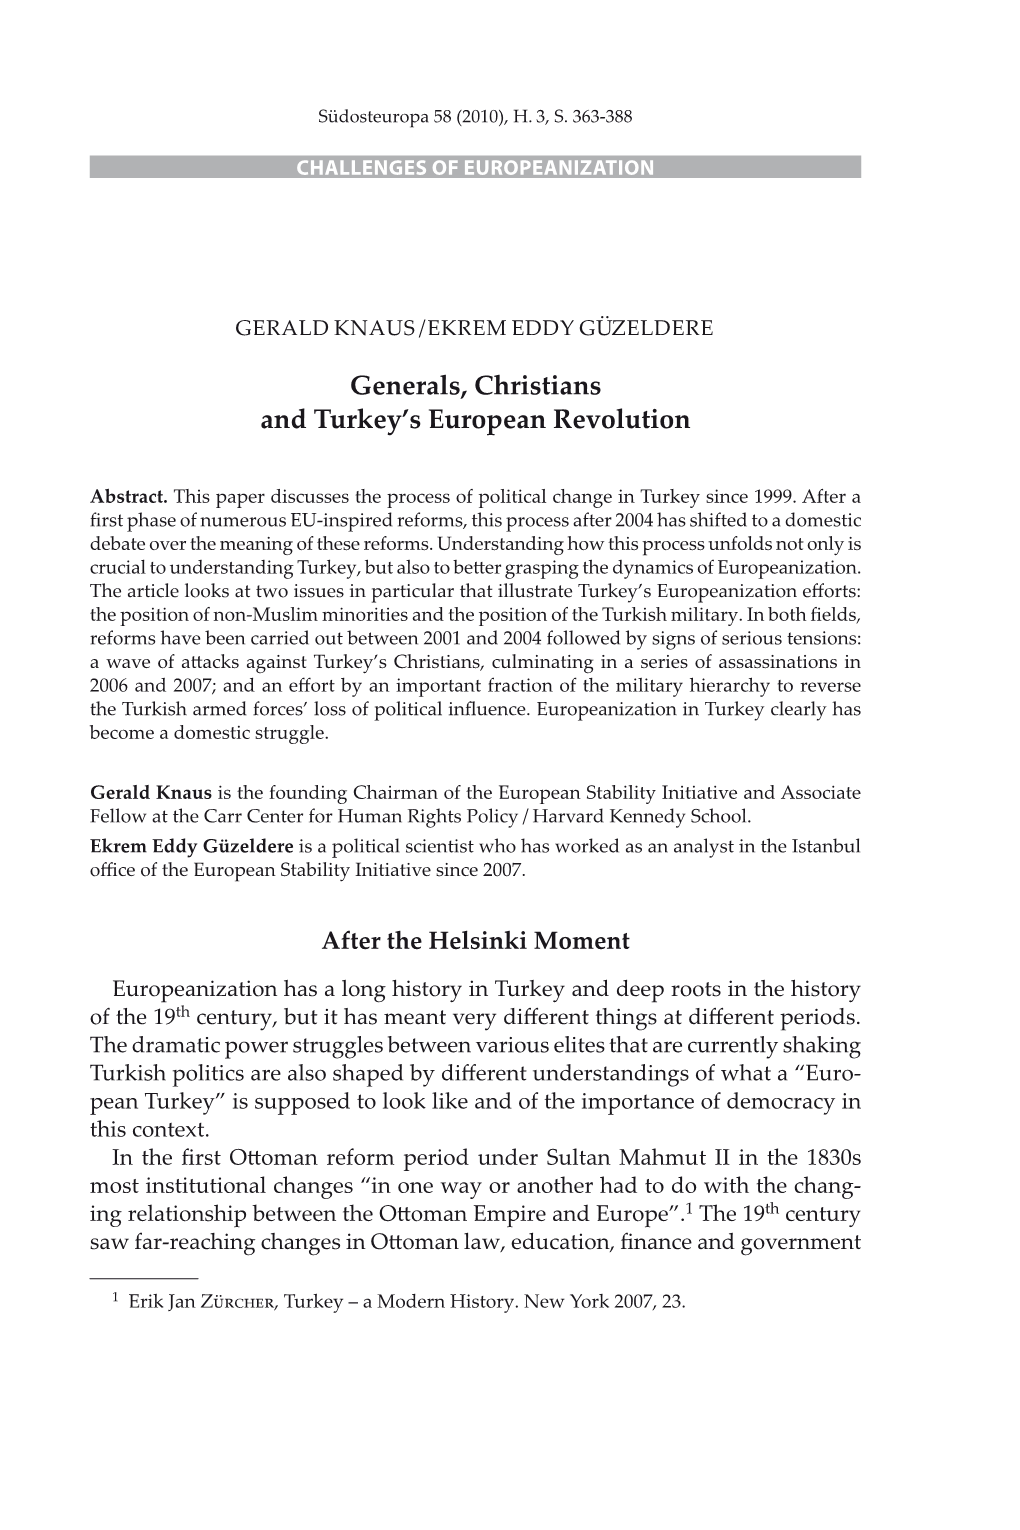 Generals, Christians and Turkey's European Revolution